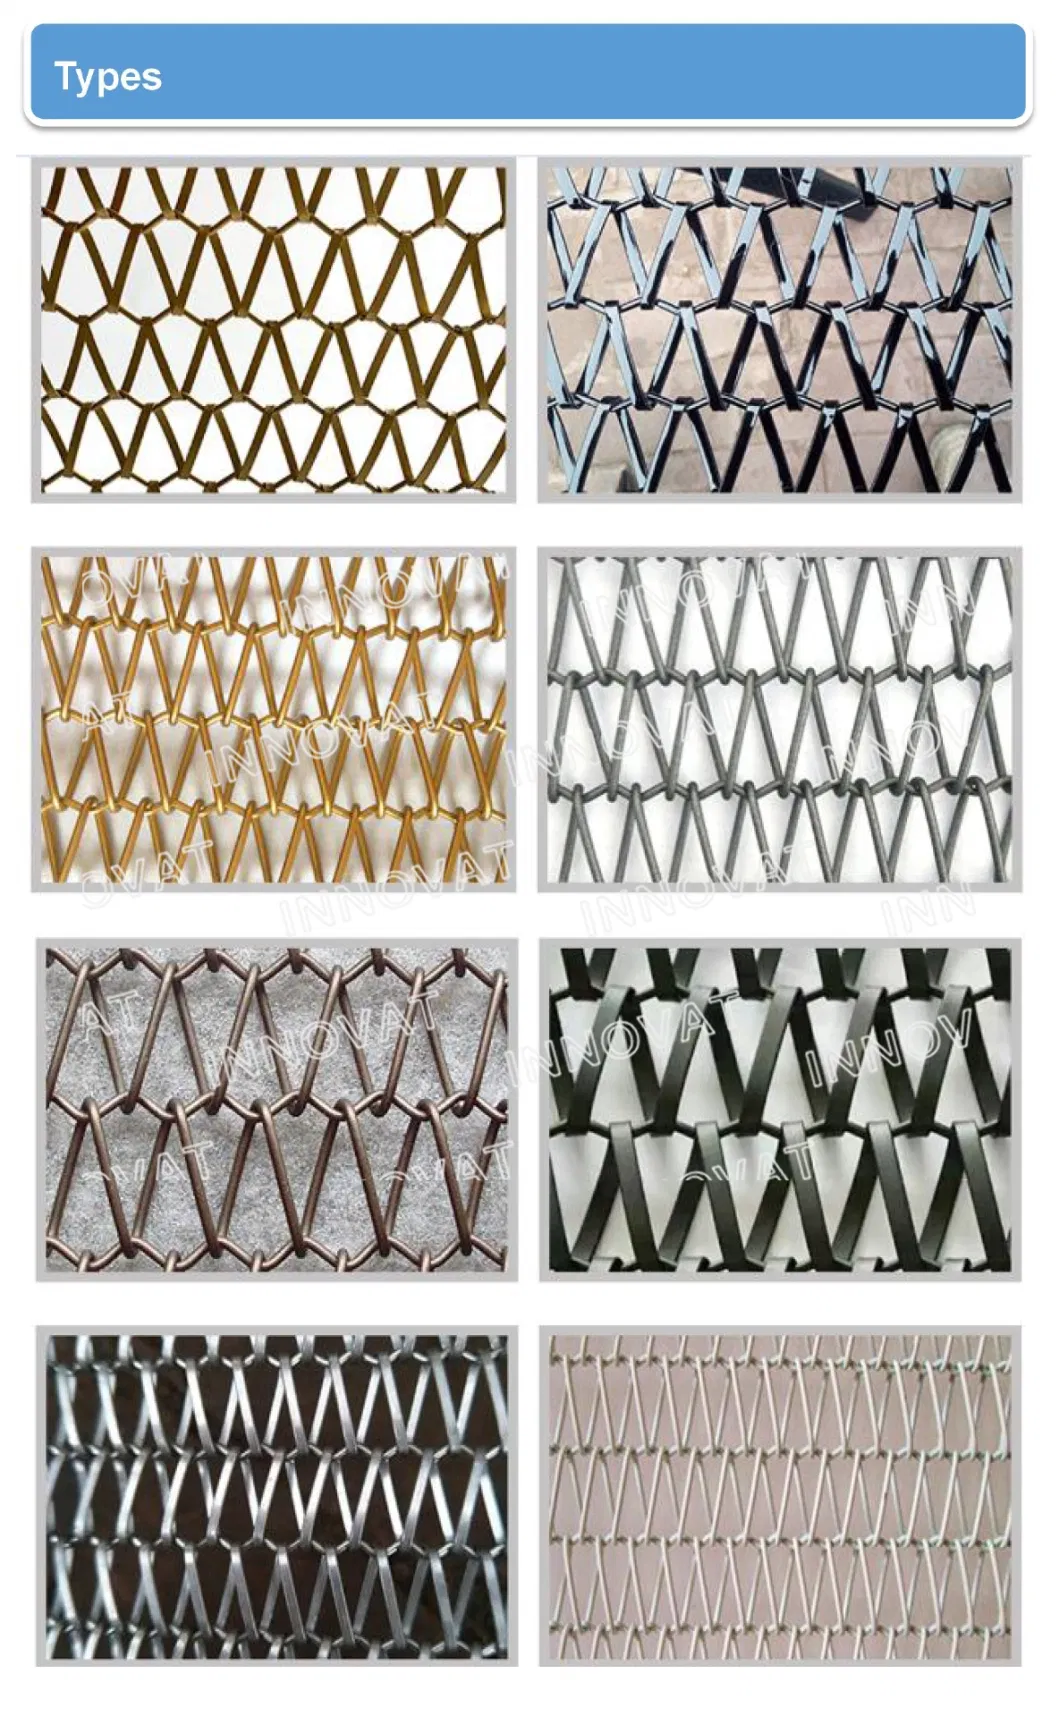 Architectural Decorative Spiral Wires Conveyor Belt Mesh